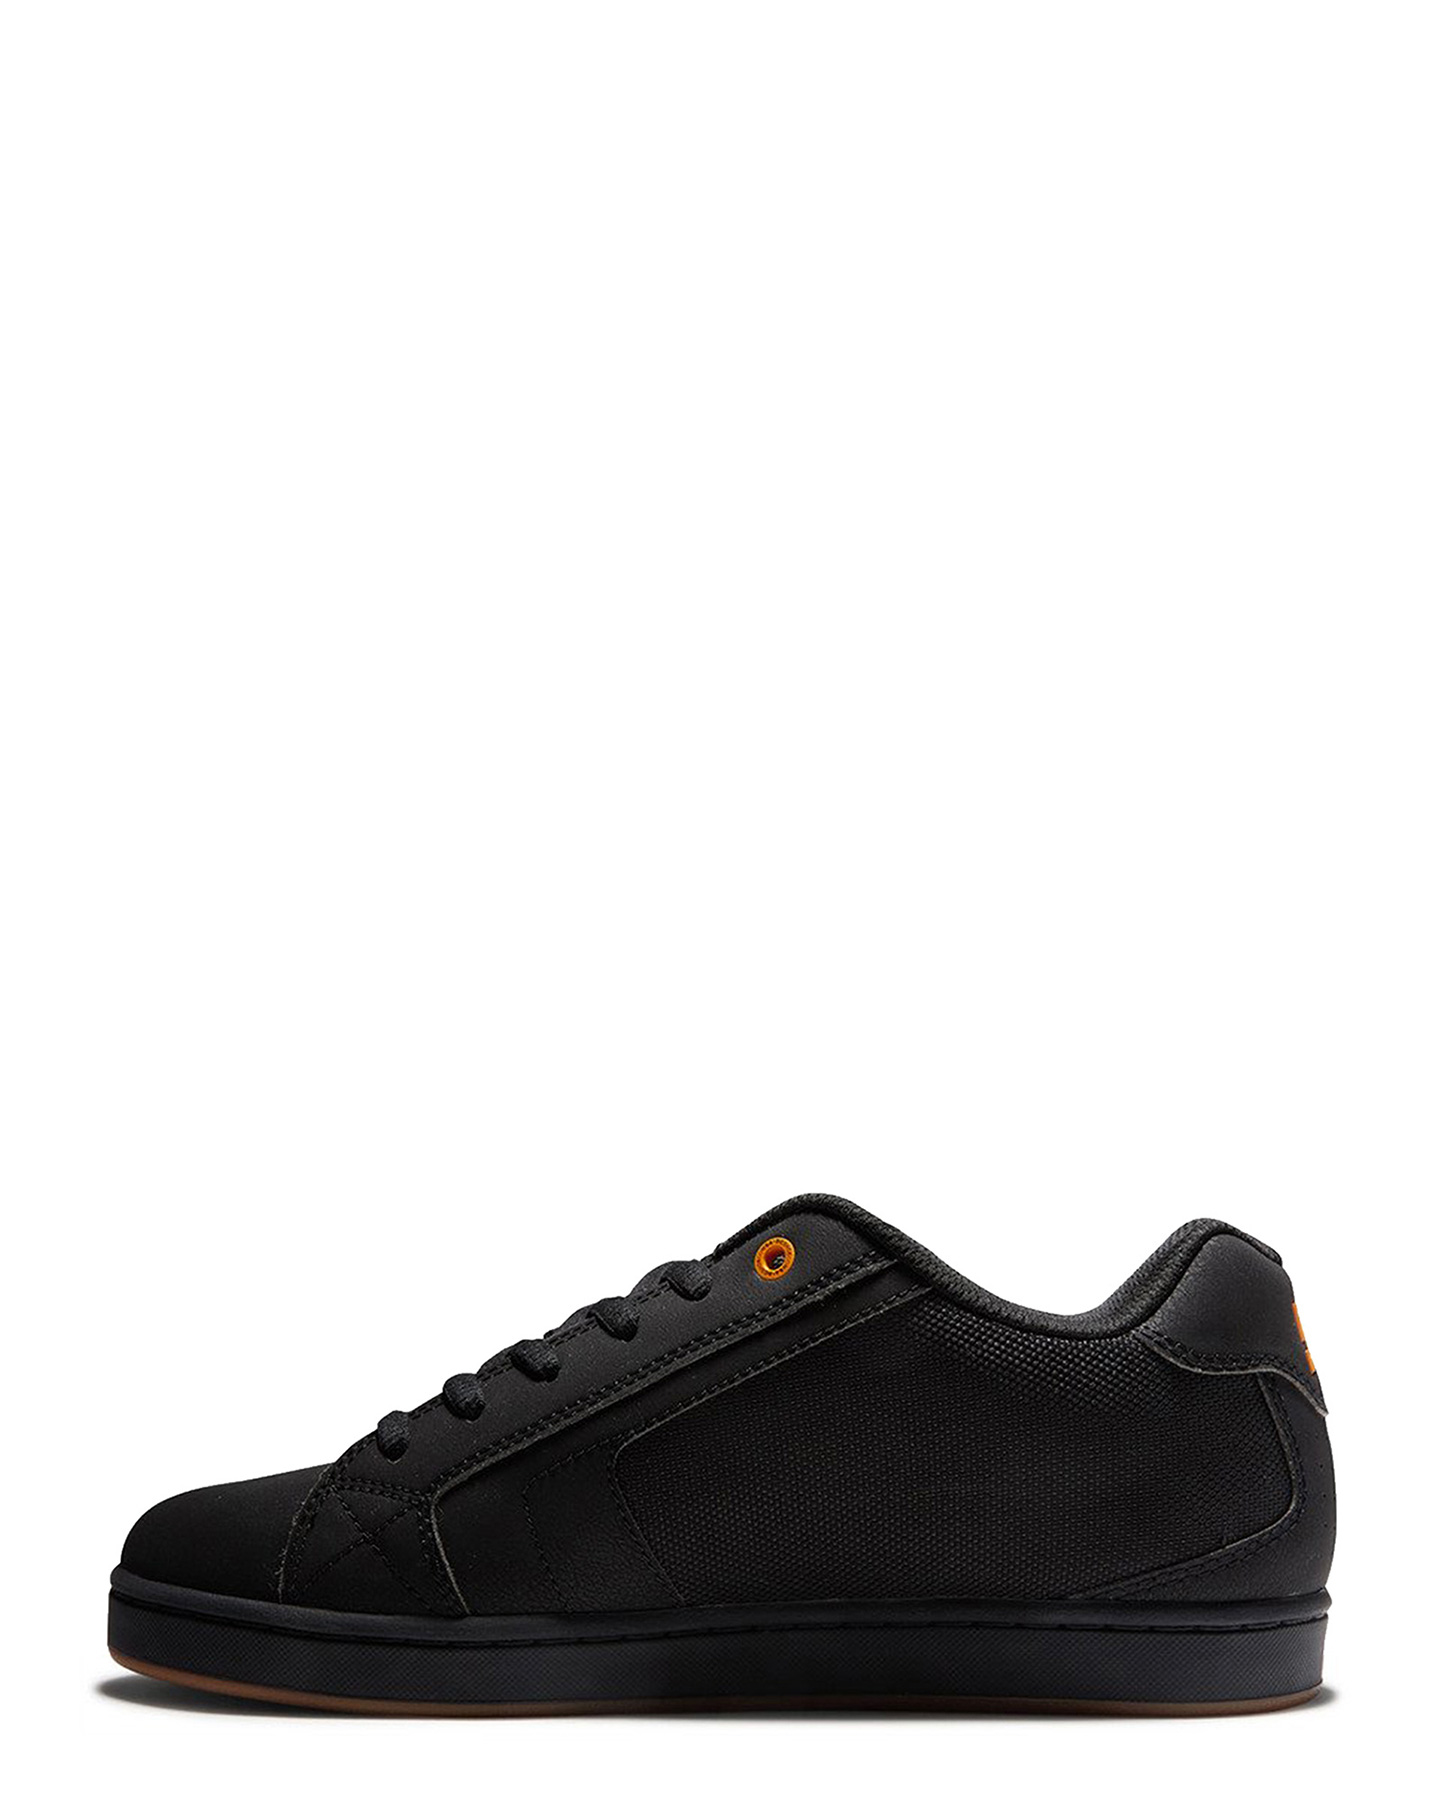 Dc Shoes Mens Net Le Shoe - Black Black Orange | SurfStitch